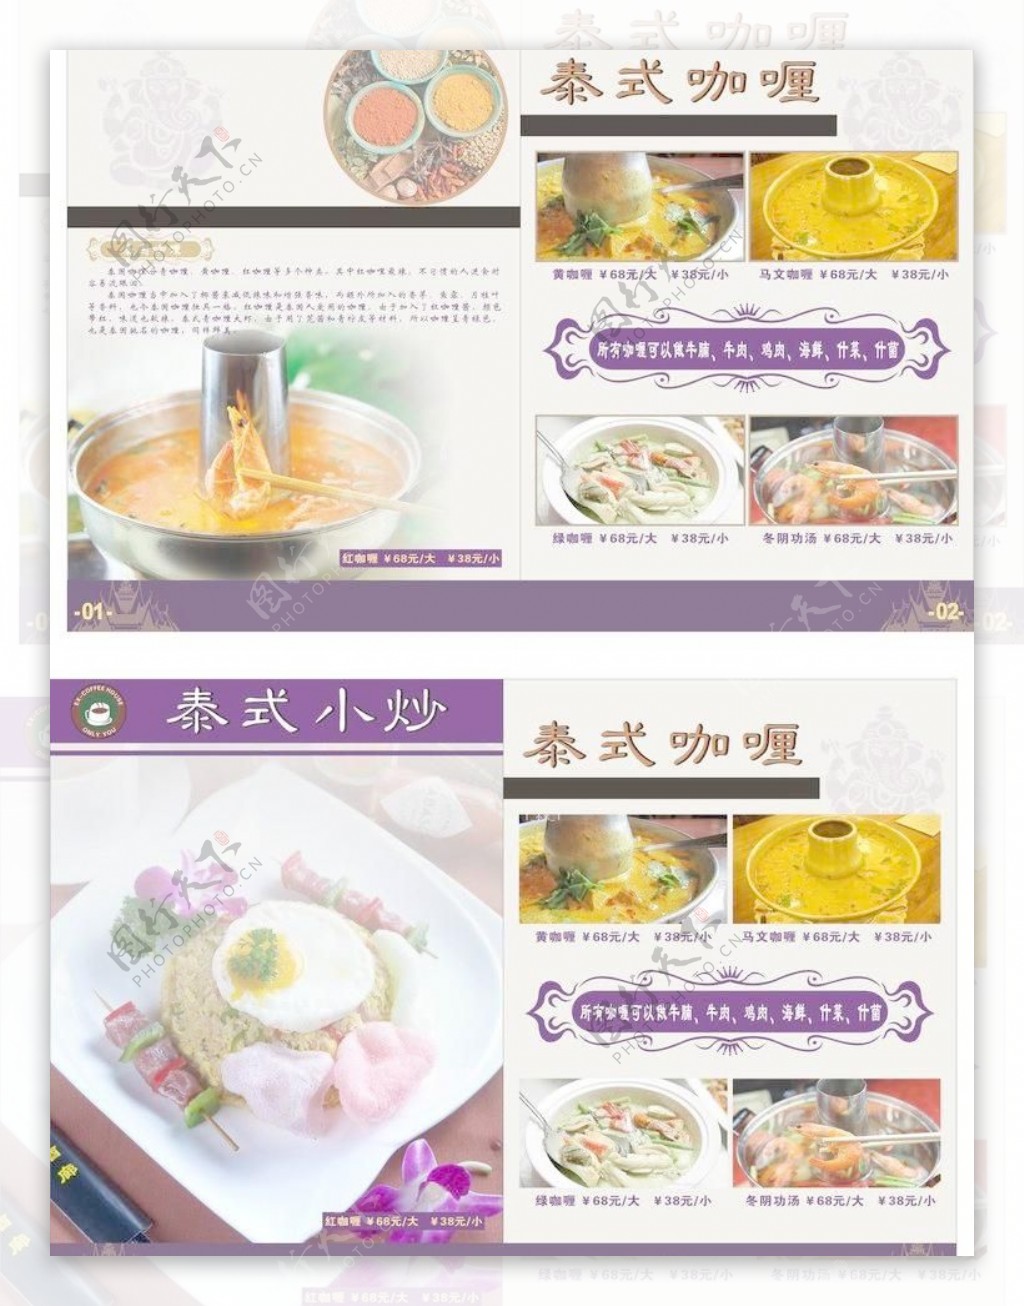 咖啡厅菜单泰式菜谱图片